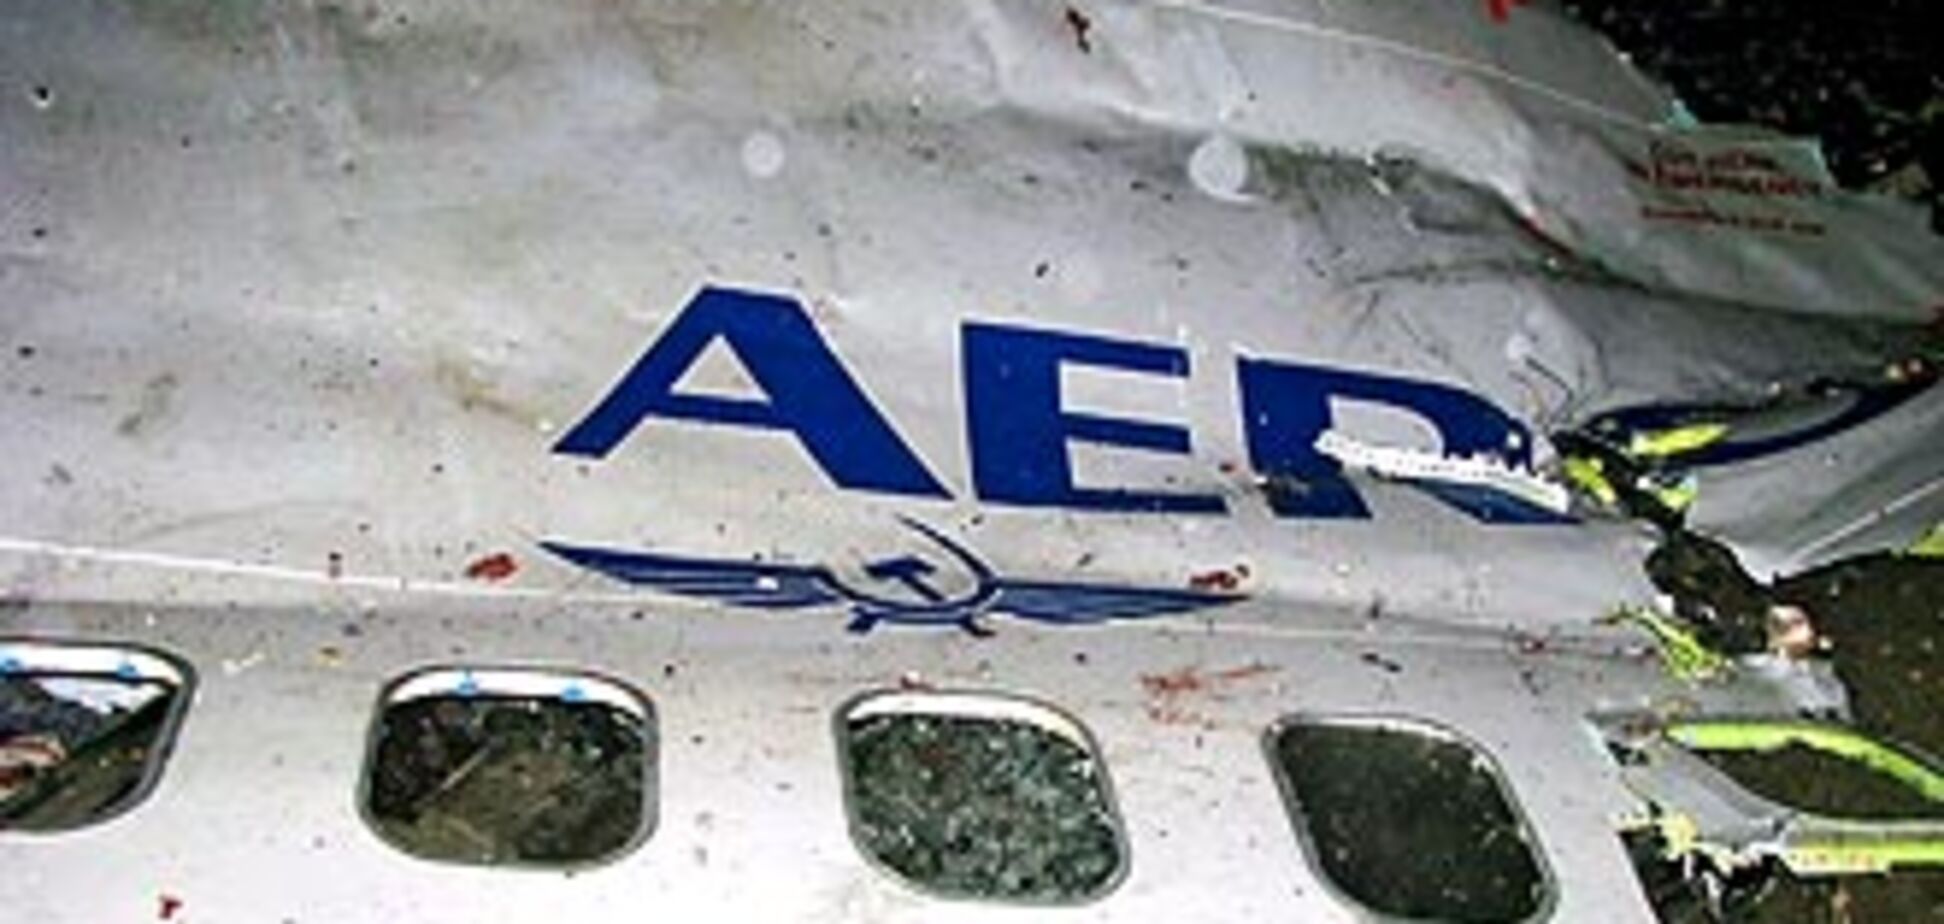 Boeing 737 взорвался не в воздухе. ВИДЕО